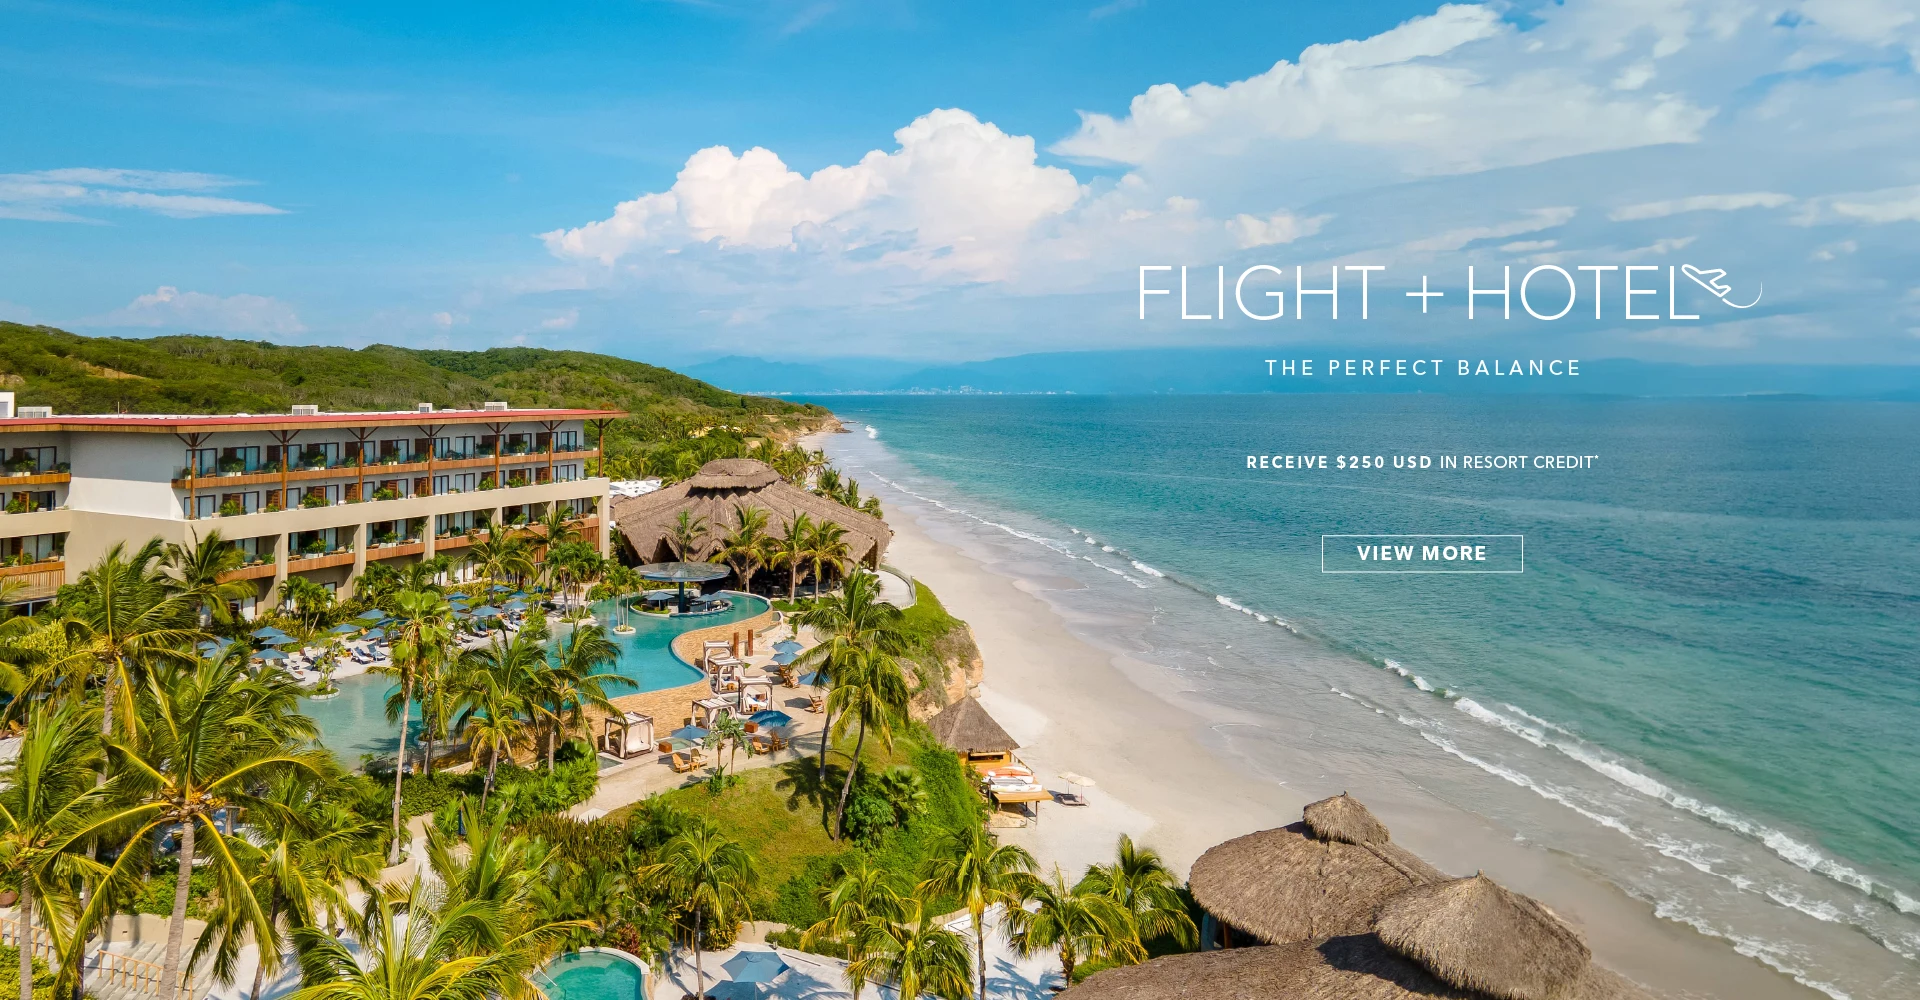 Hotel and flights offer in Punta de Mita